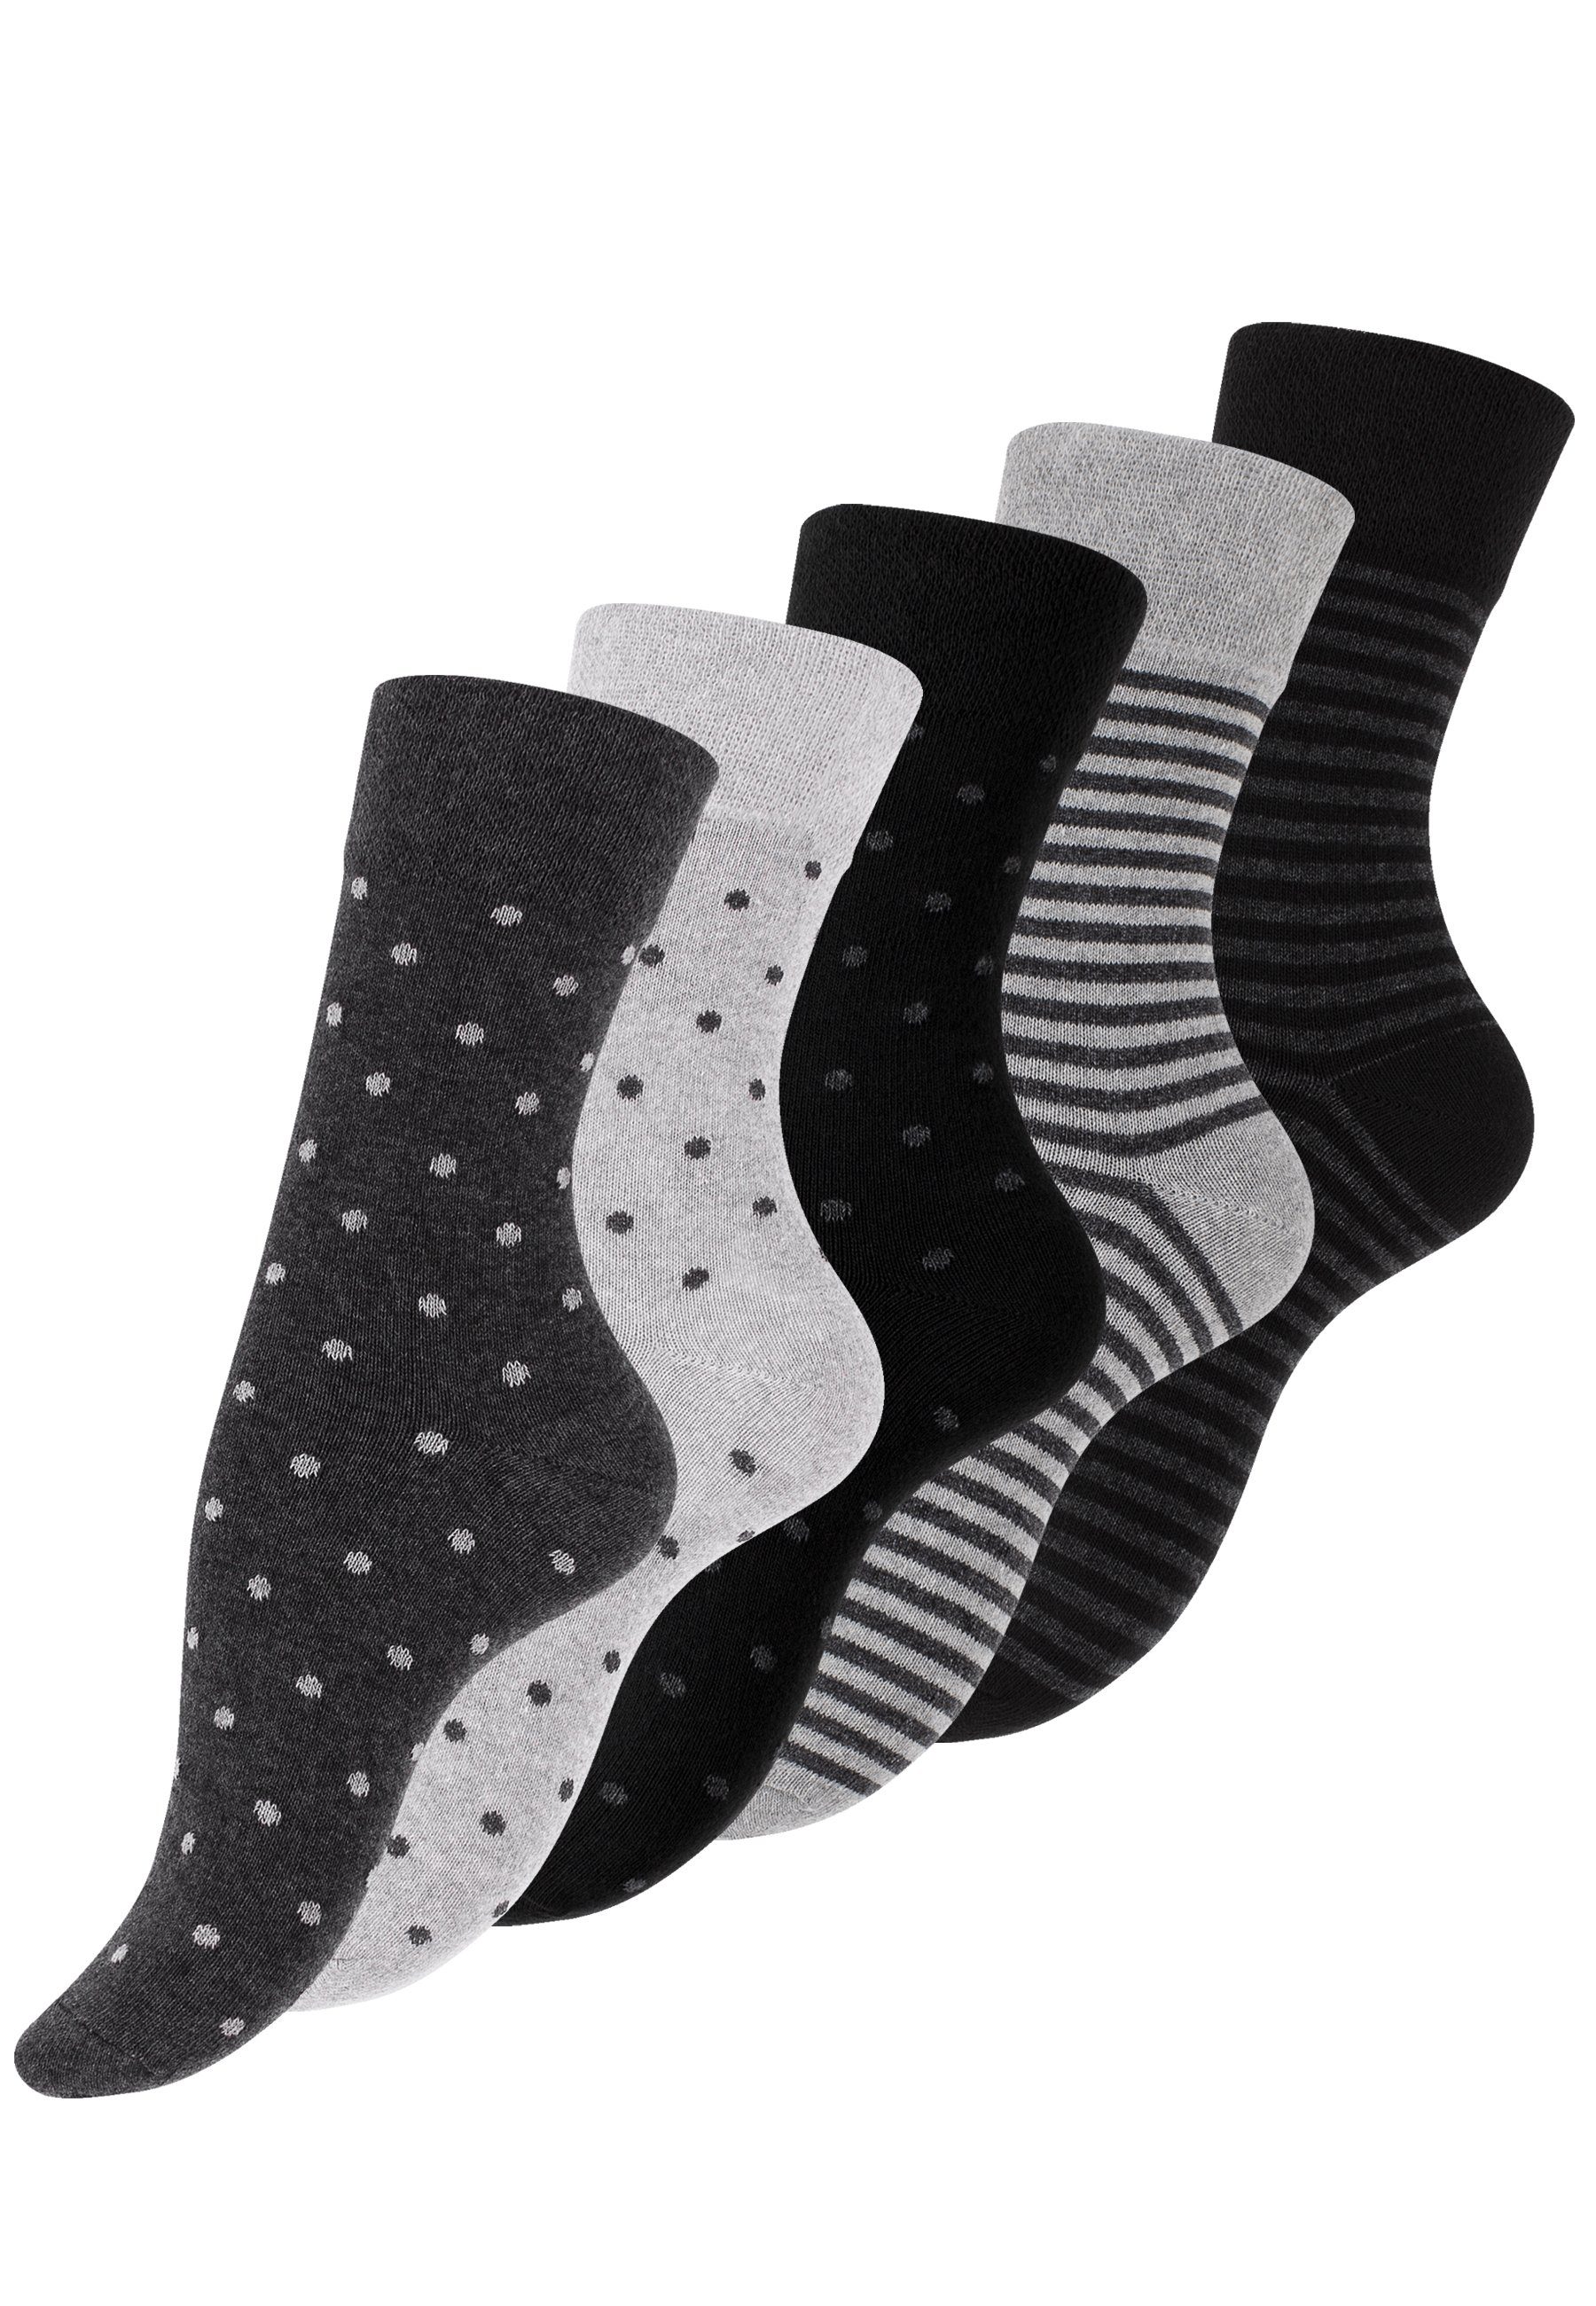 Vincent Creation® Socken (10-Paar) in angenehmer Baumwollqualität grau-anthrazit-schwarz